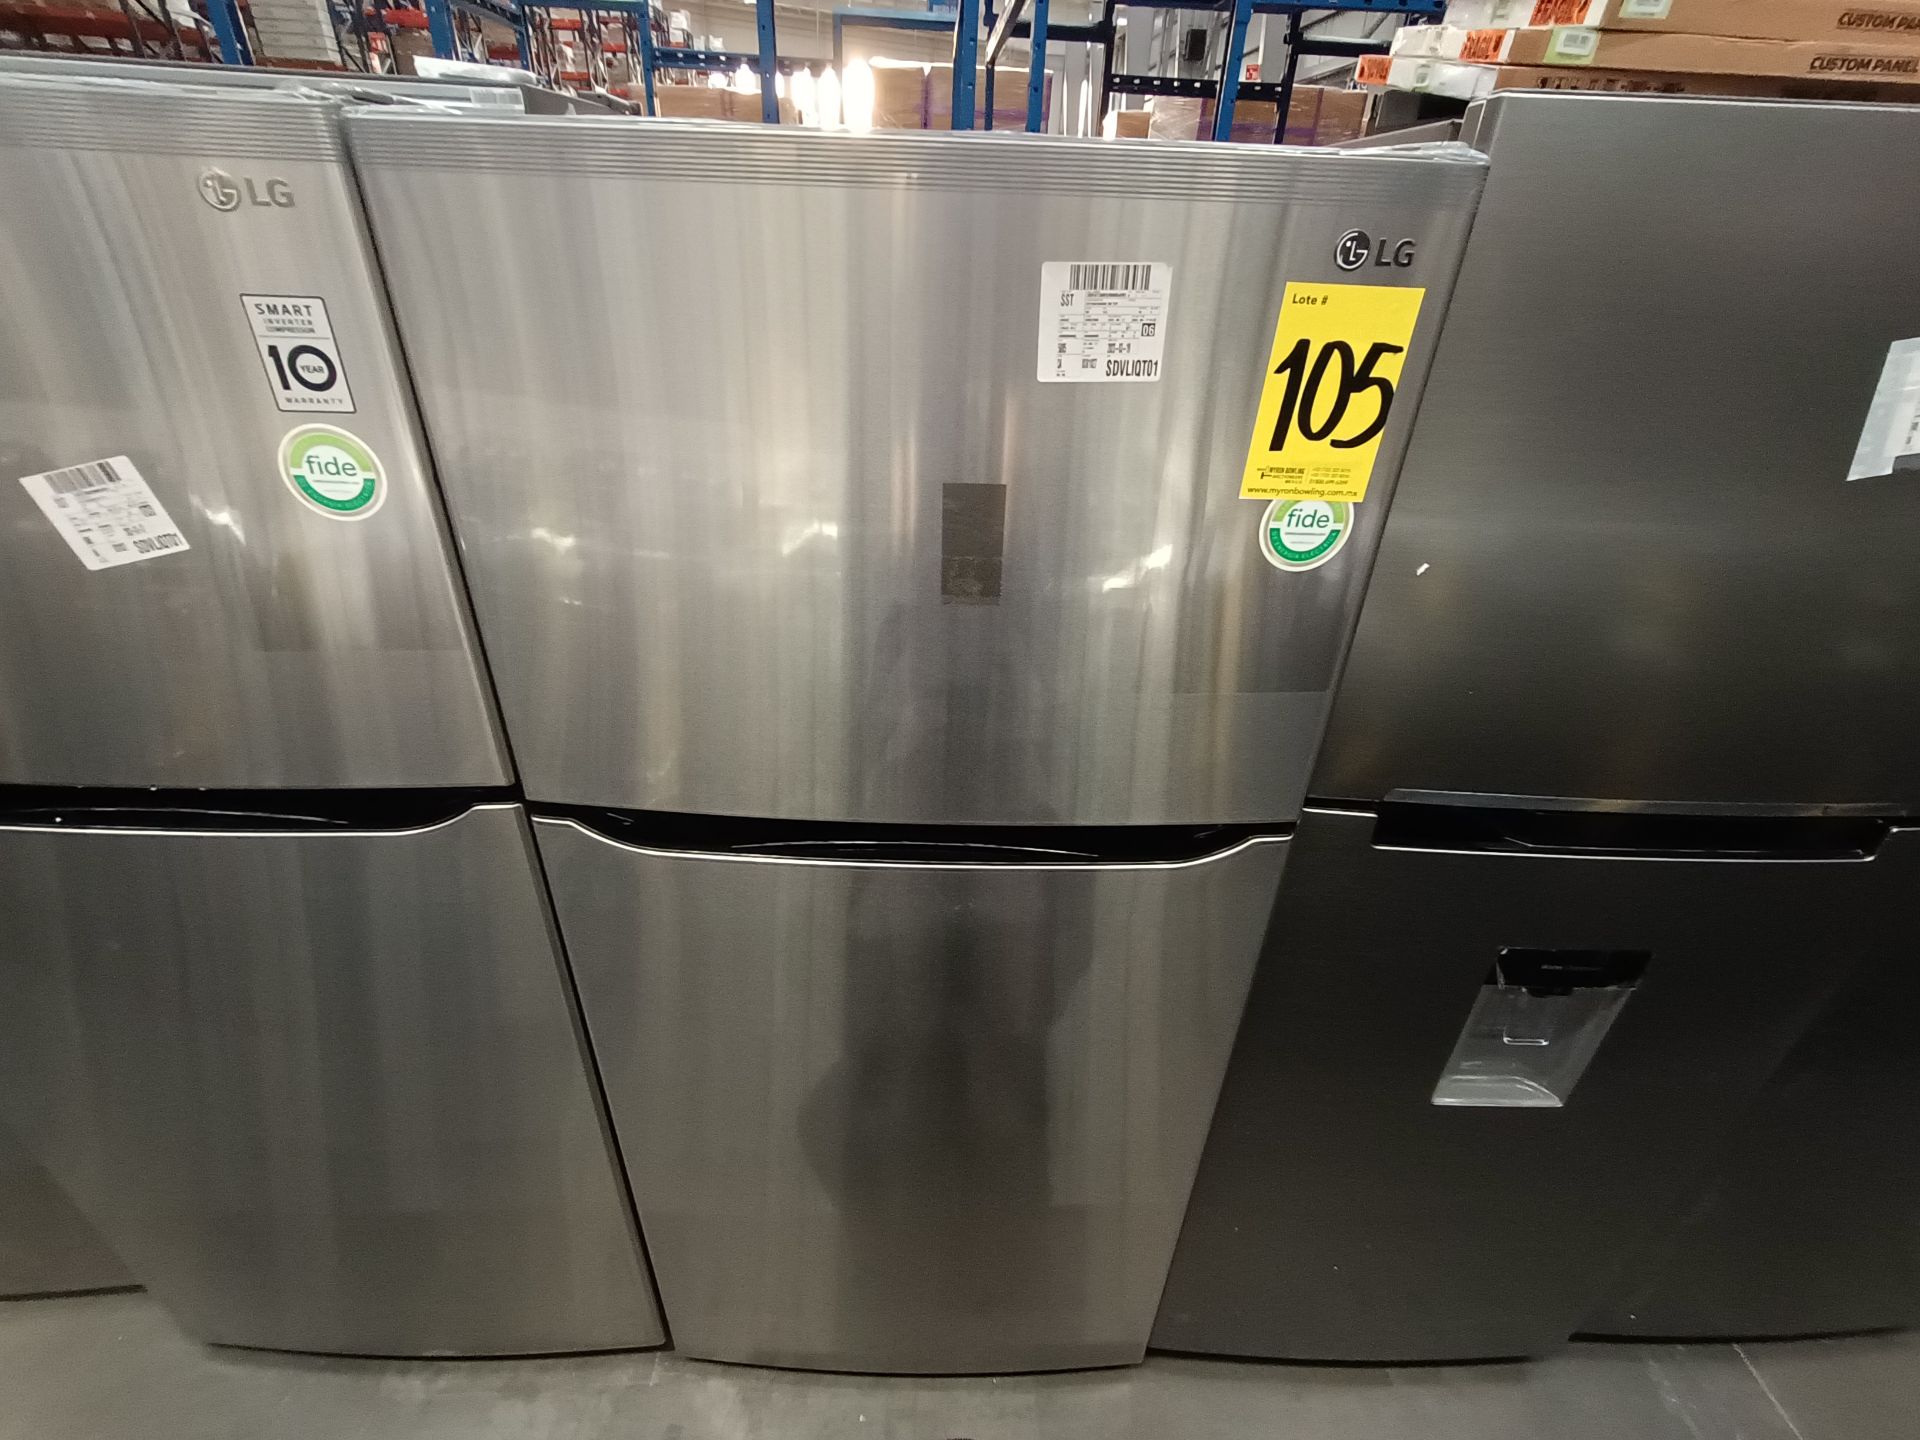 (Nuevo) Lote de 1 Refrigerador sin Dispensador de Agua Marca LG, Modelo LT57BPSX, Serie W18773, Col